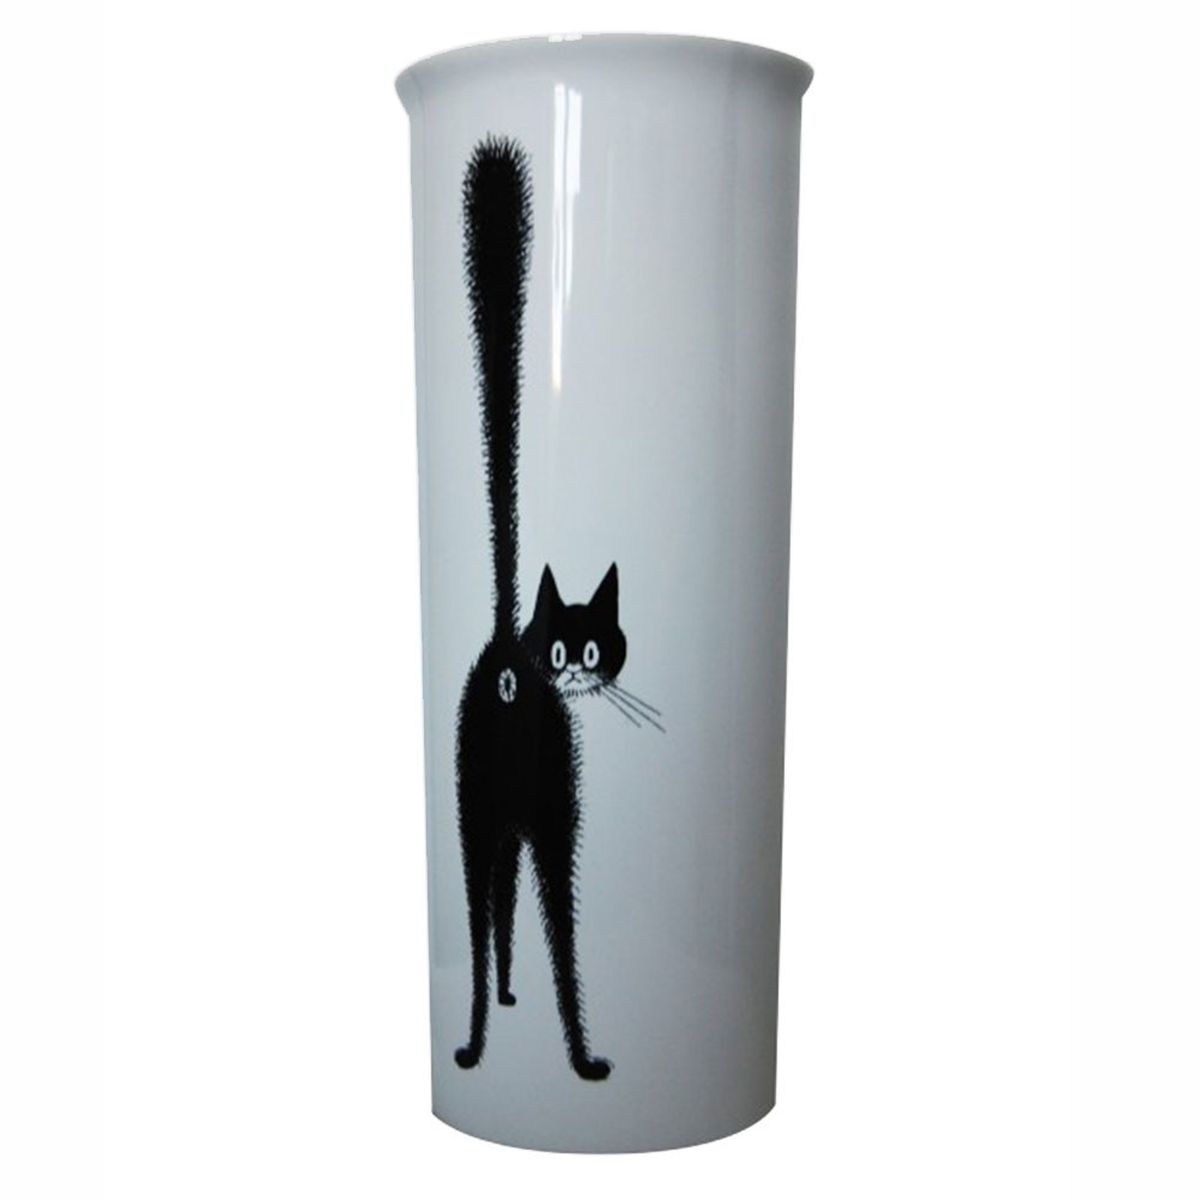 Vase Les Chats de Dubout - Le Troisime Oeil 20 cm